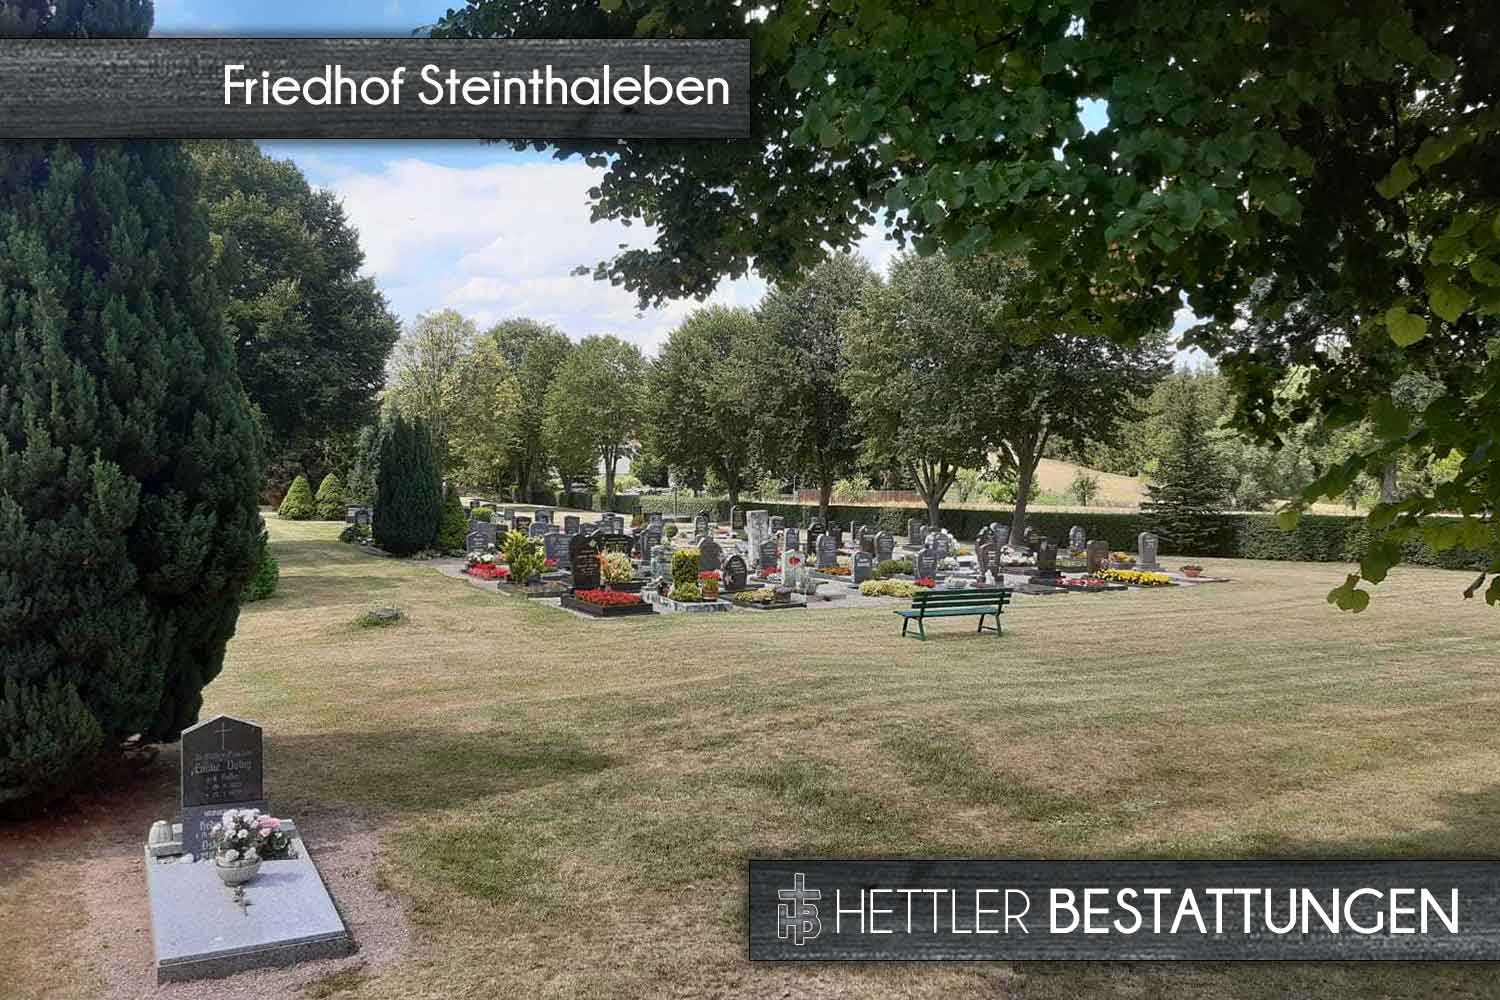 Friedhof in Steinthaleben. Ihr Ort des Abschieds mit Hettler Bestattungen.